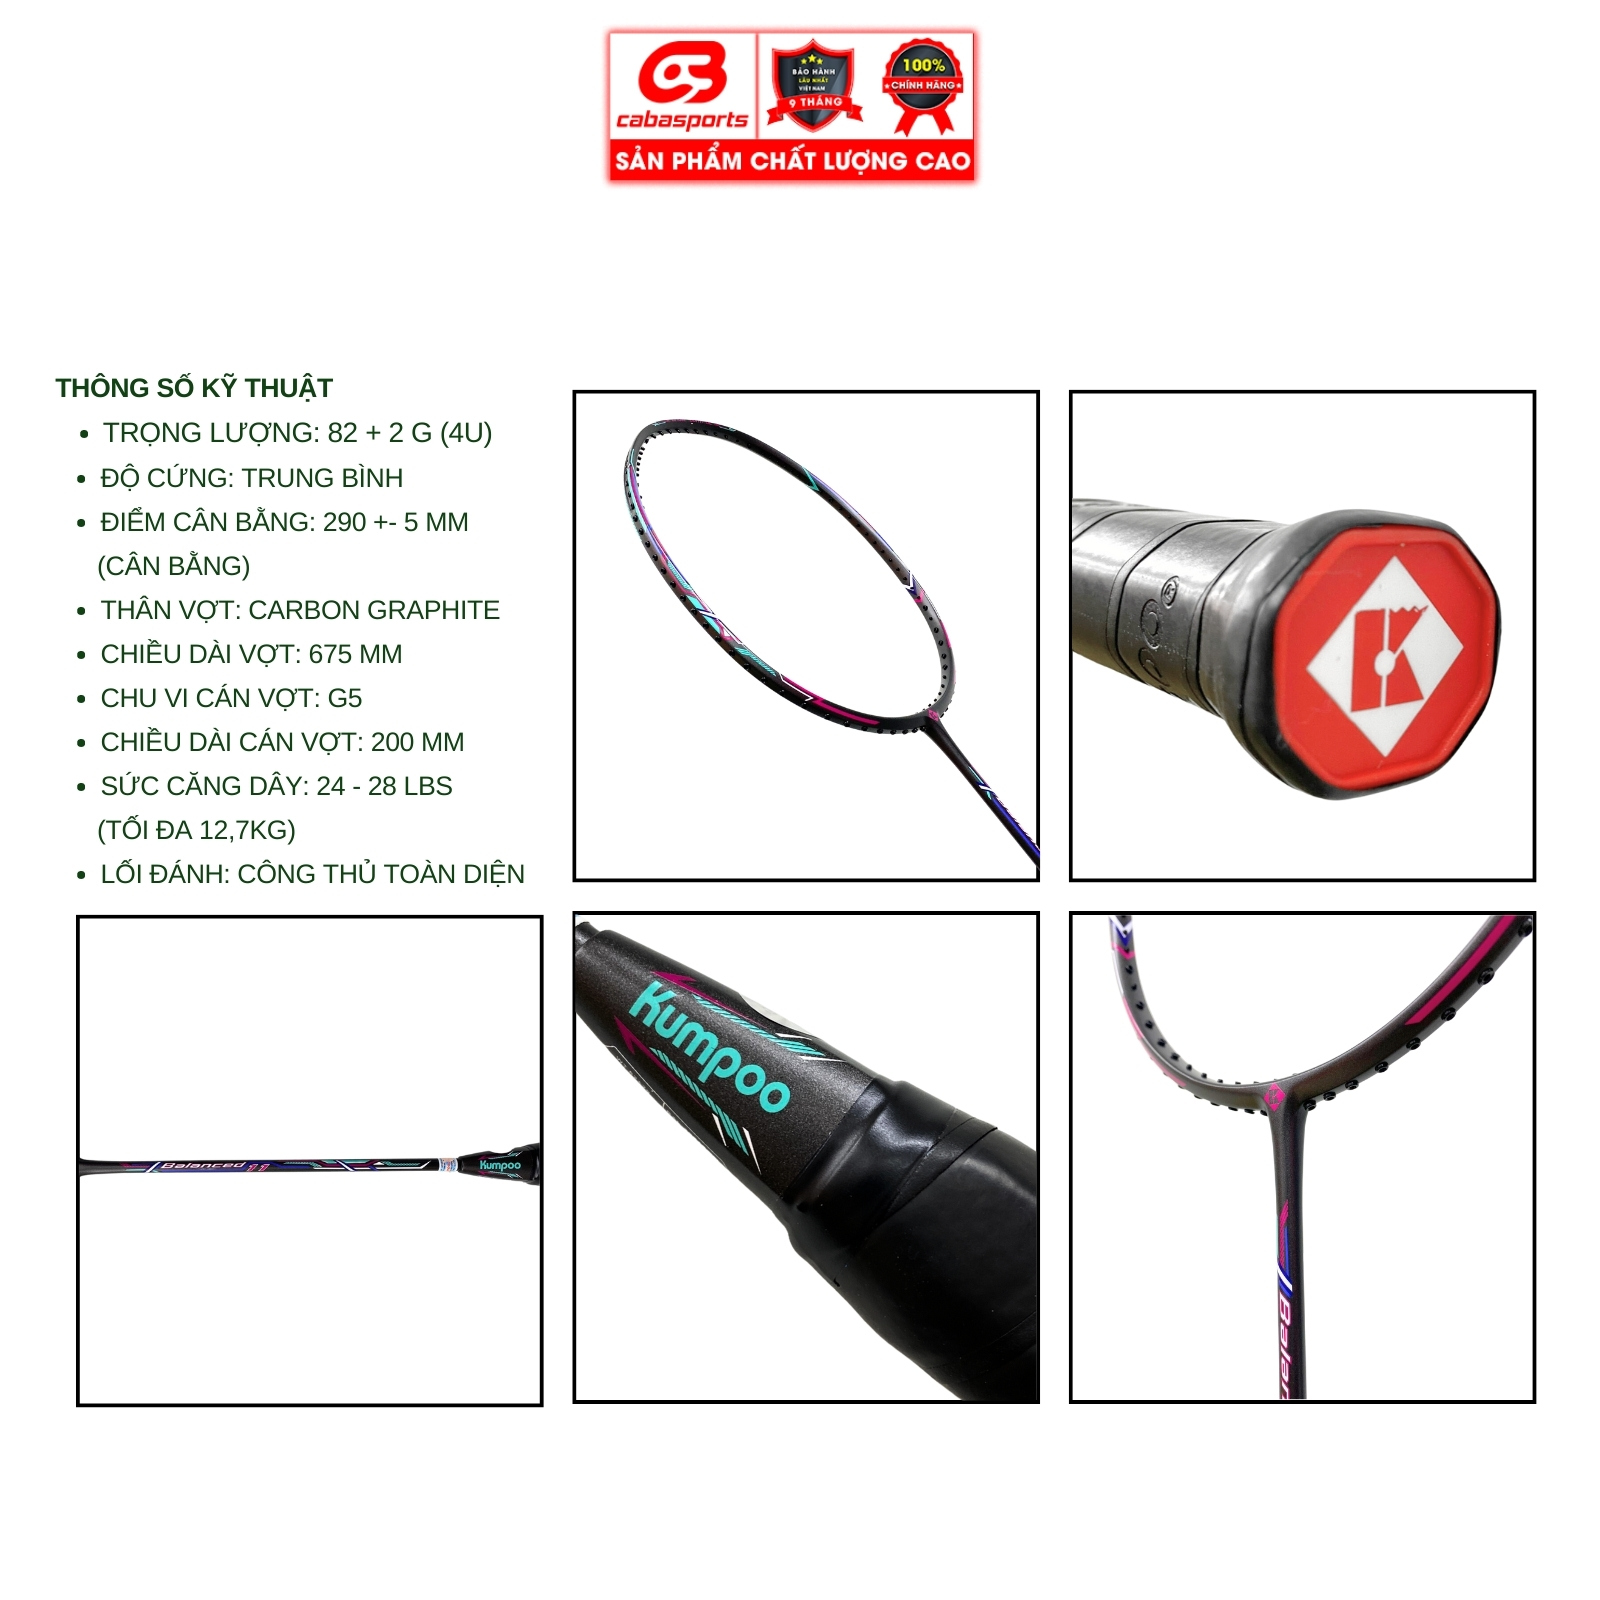 Vợt cầu lông đơn đã đan lưới Kumpoo Power Balanced 11 siêu nhẹ chính hãng, vợt công thủ toàn diện chất lượng giá rẻ